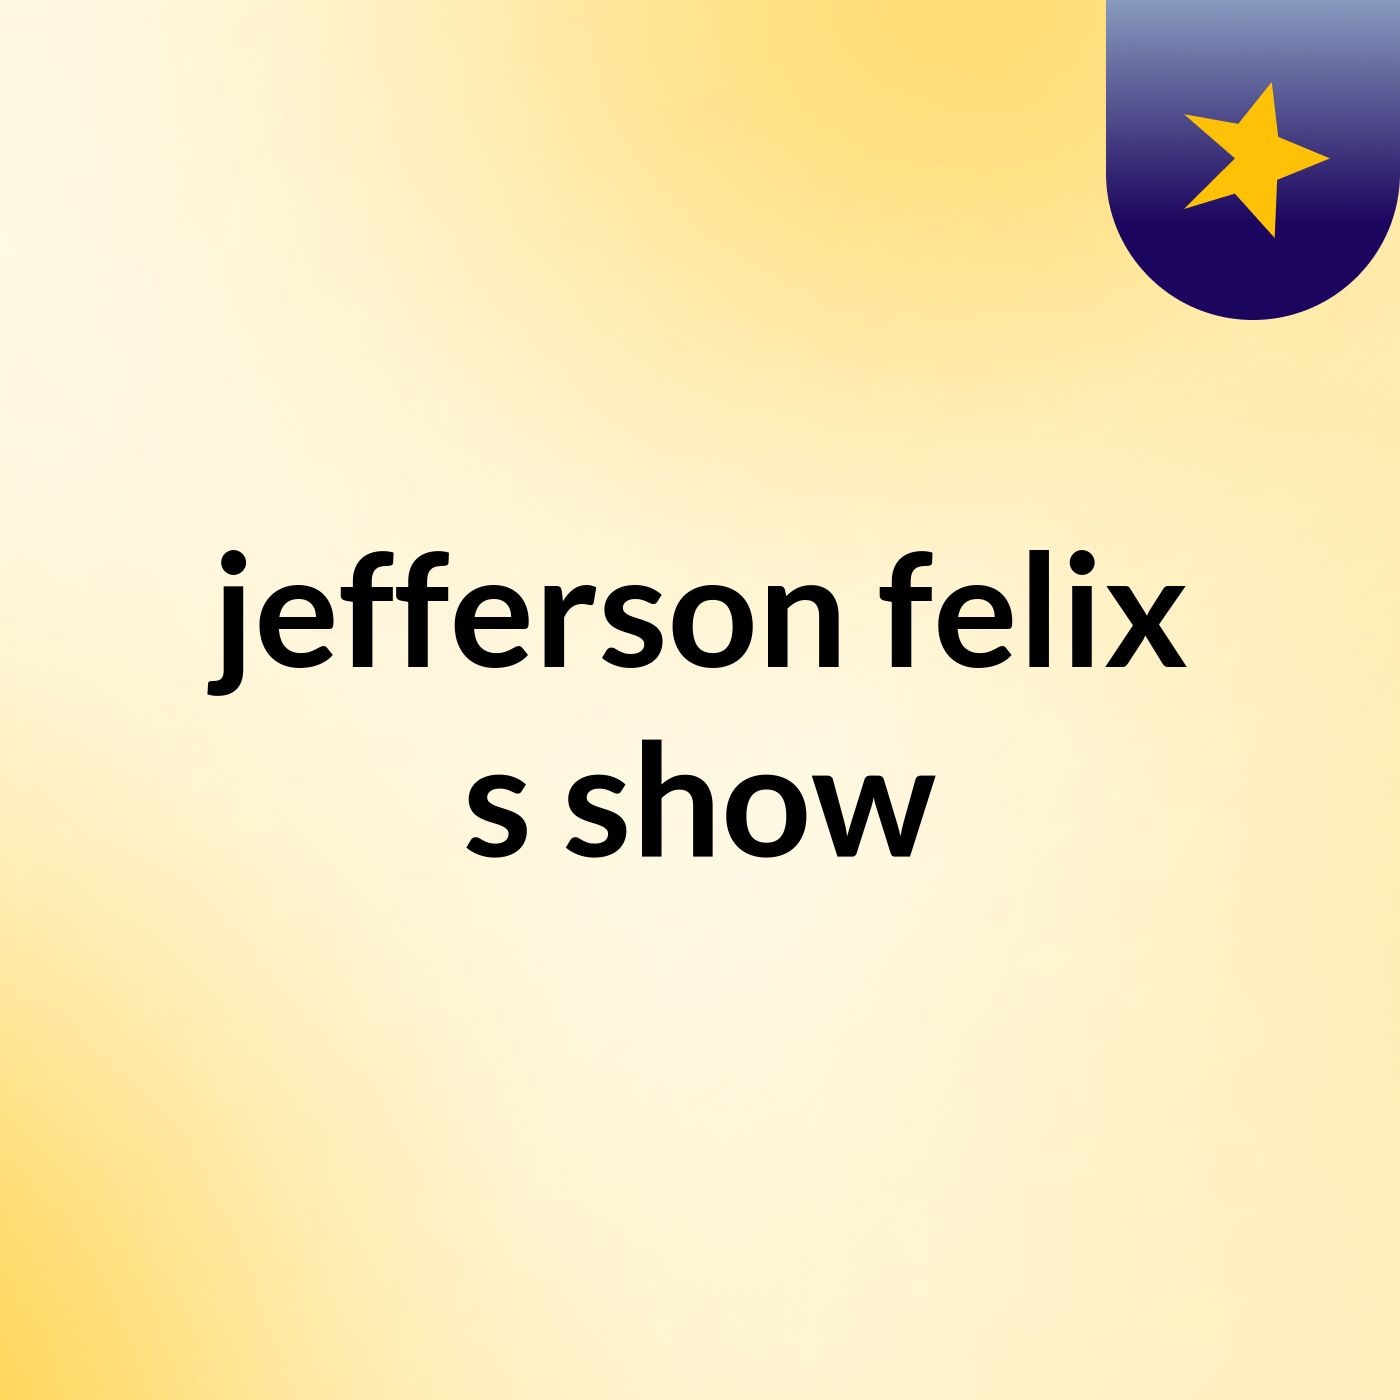 jefferson felix's show